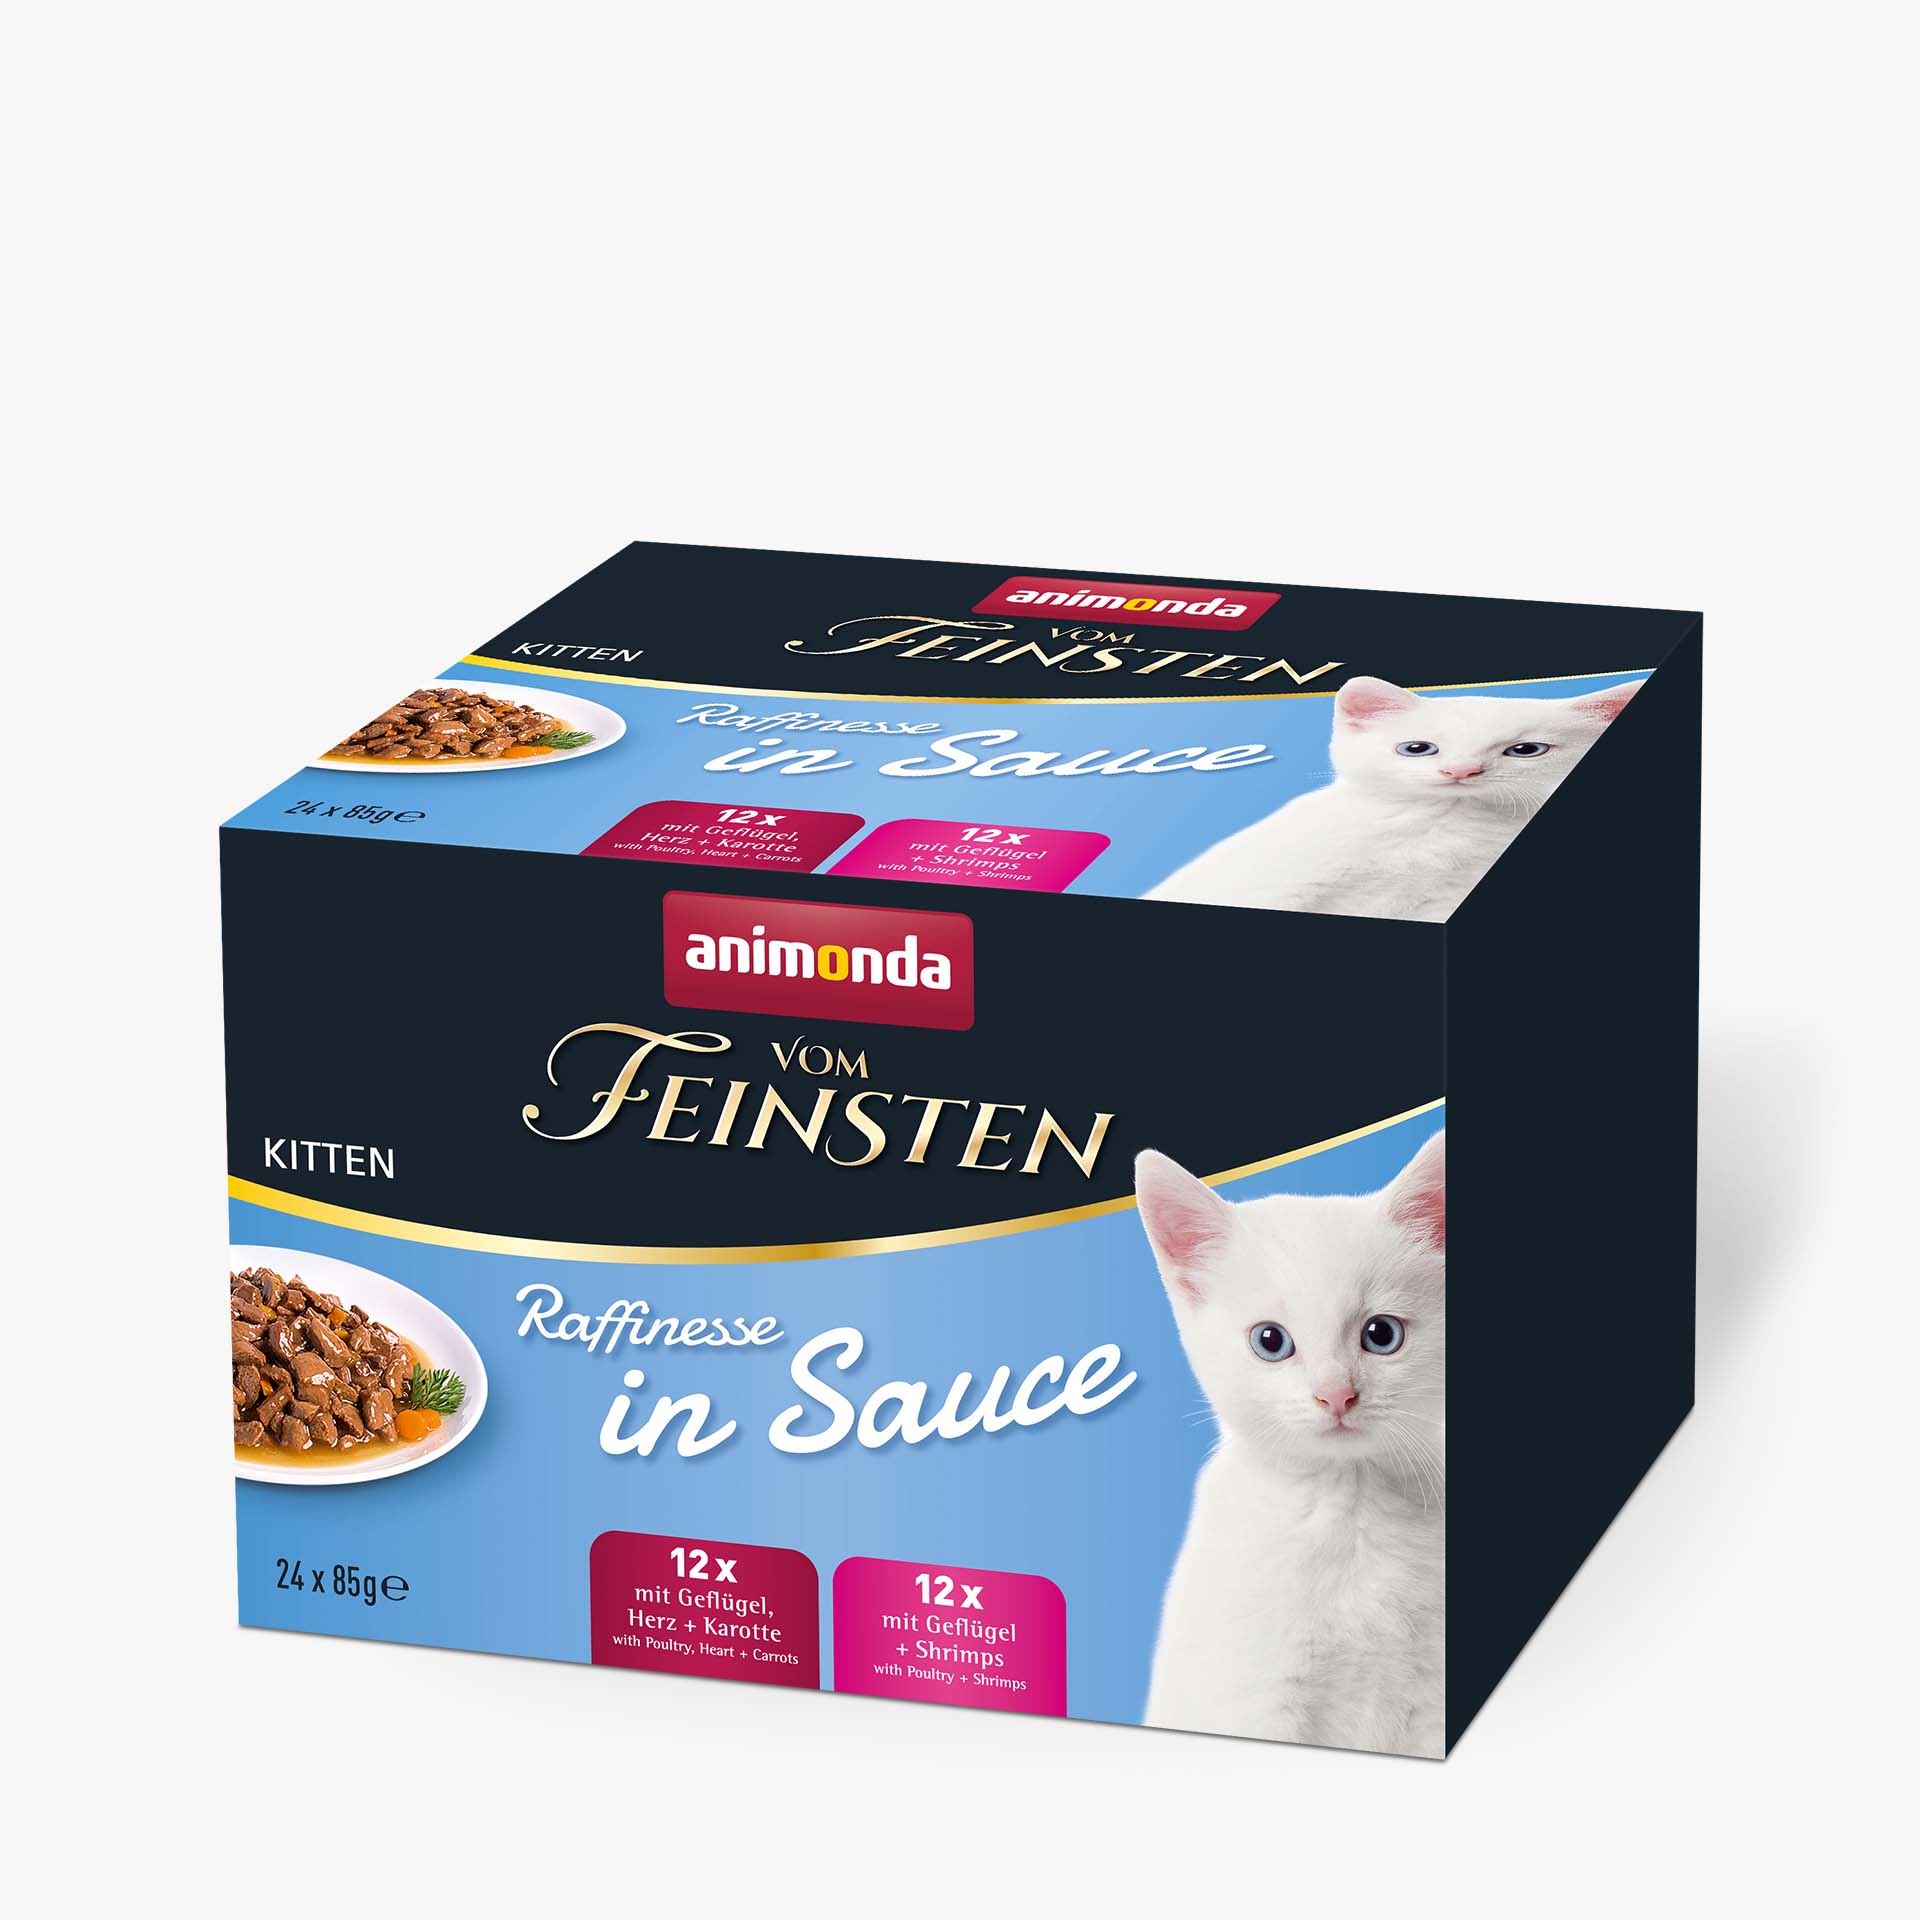 Vom Feinsten Kitten Raffinesse in Sauce Kitten 24 x 85g Mixpack 